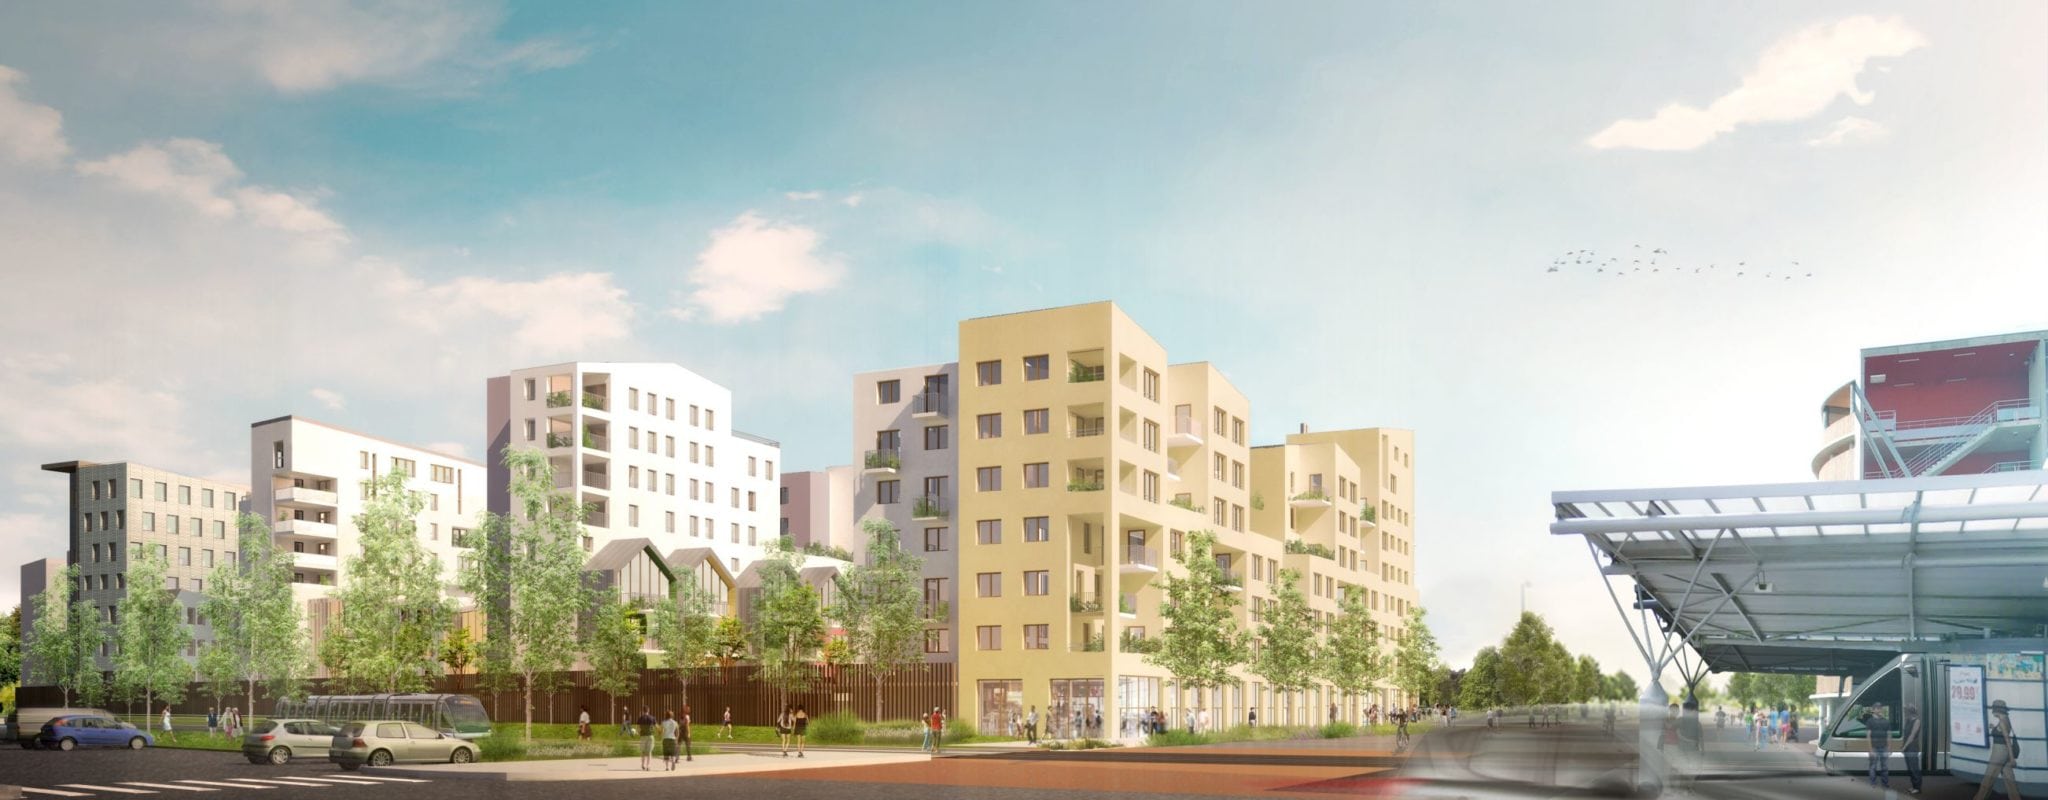 À Rotonde, un projet immobilier va bouleverser le quartier de Cronenbourg